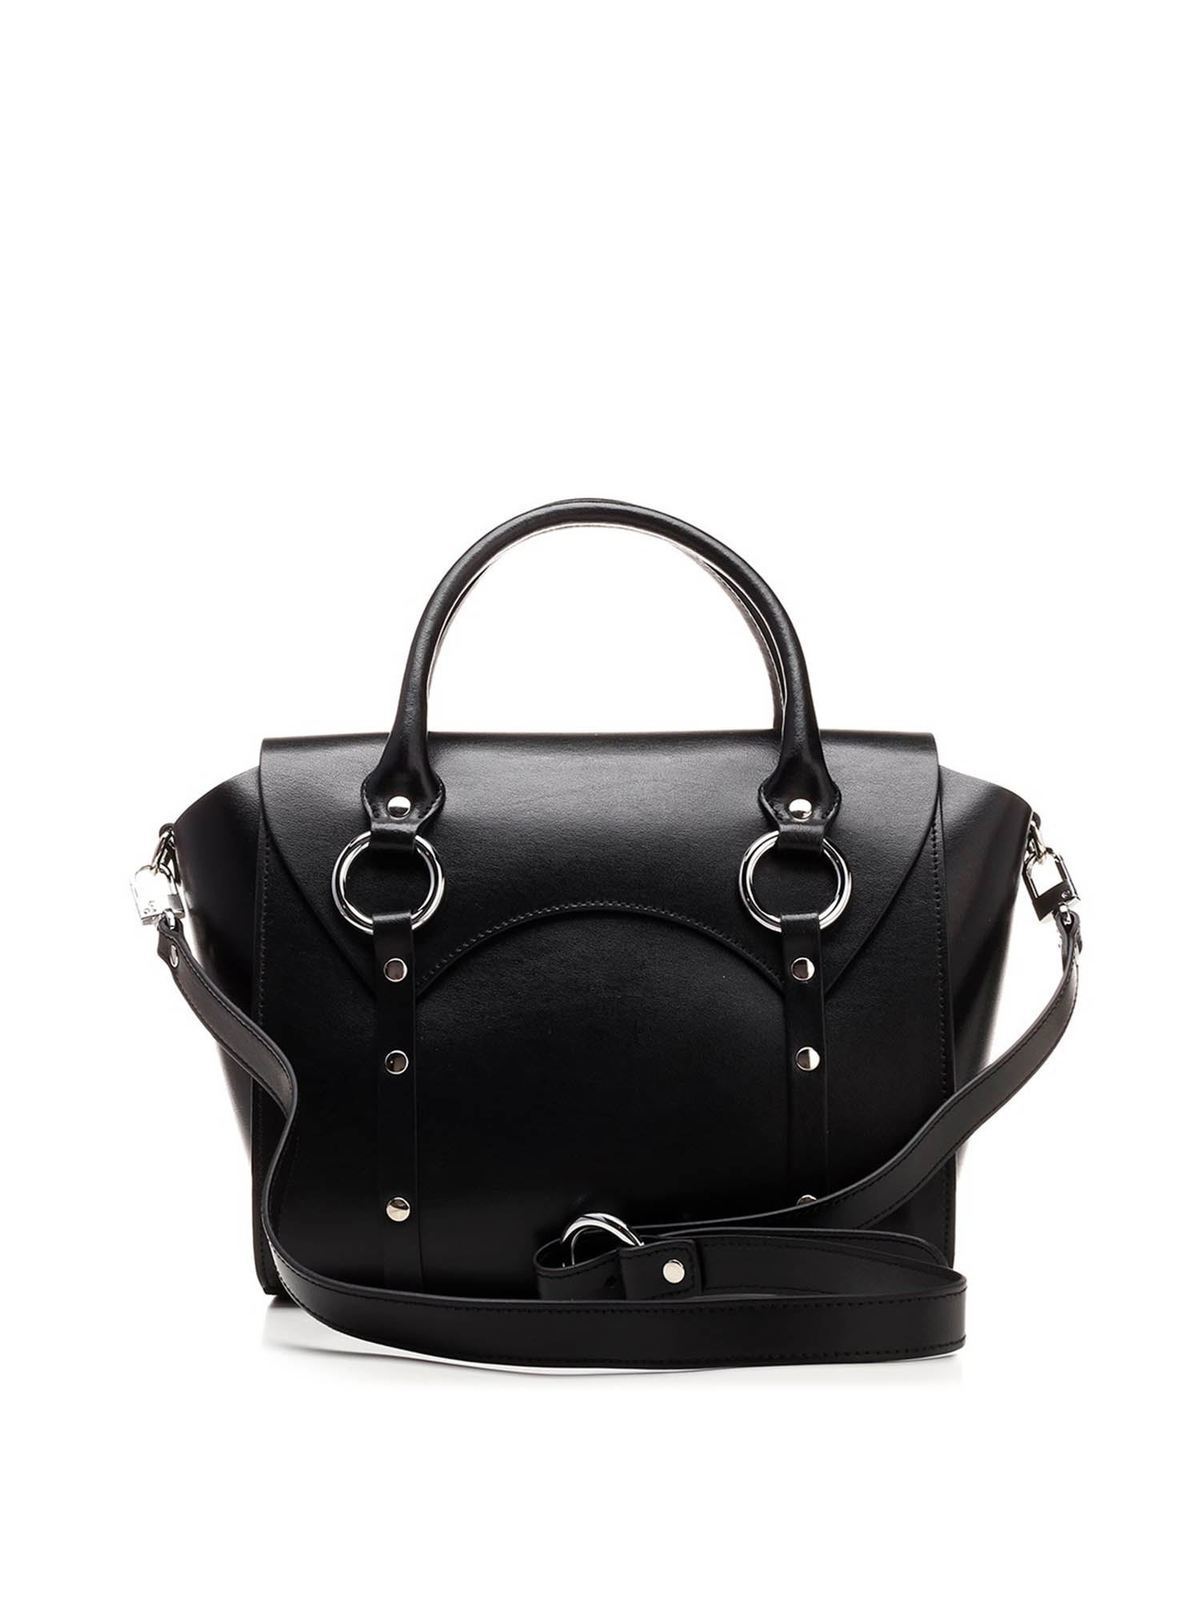 Totes bags Vivienne Westwood - Medium Betty bag in black ...